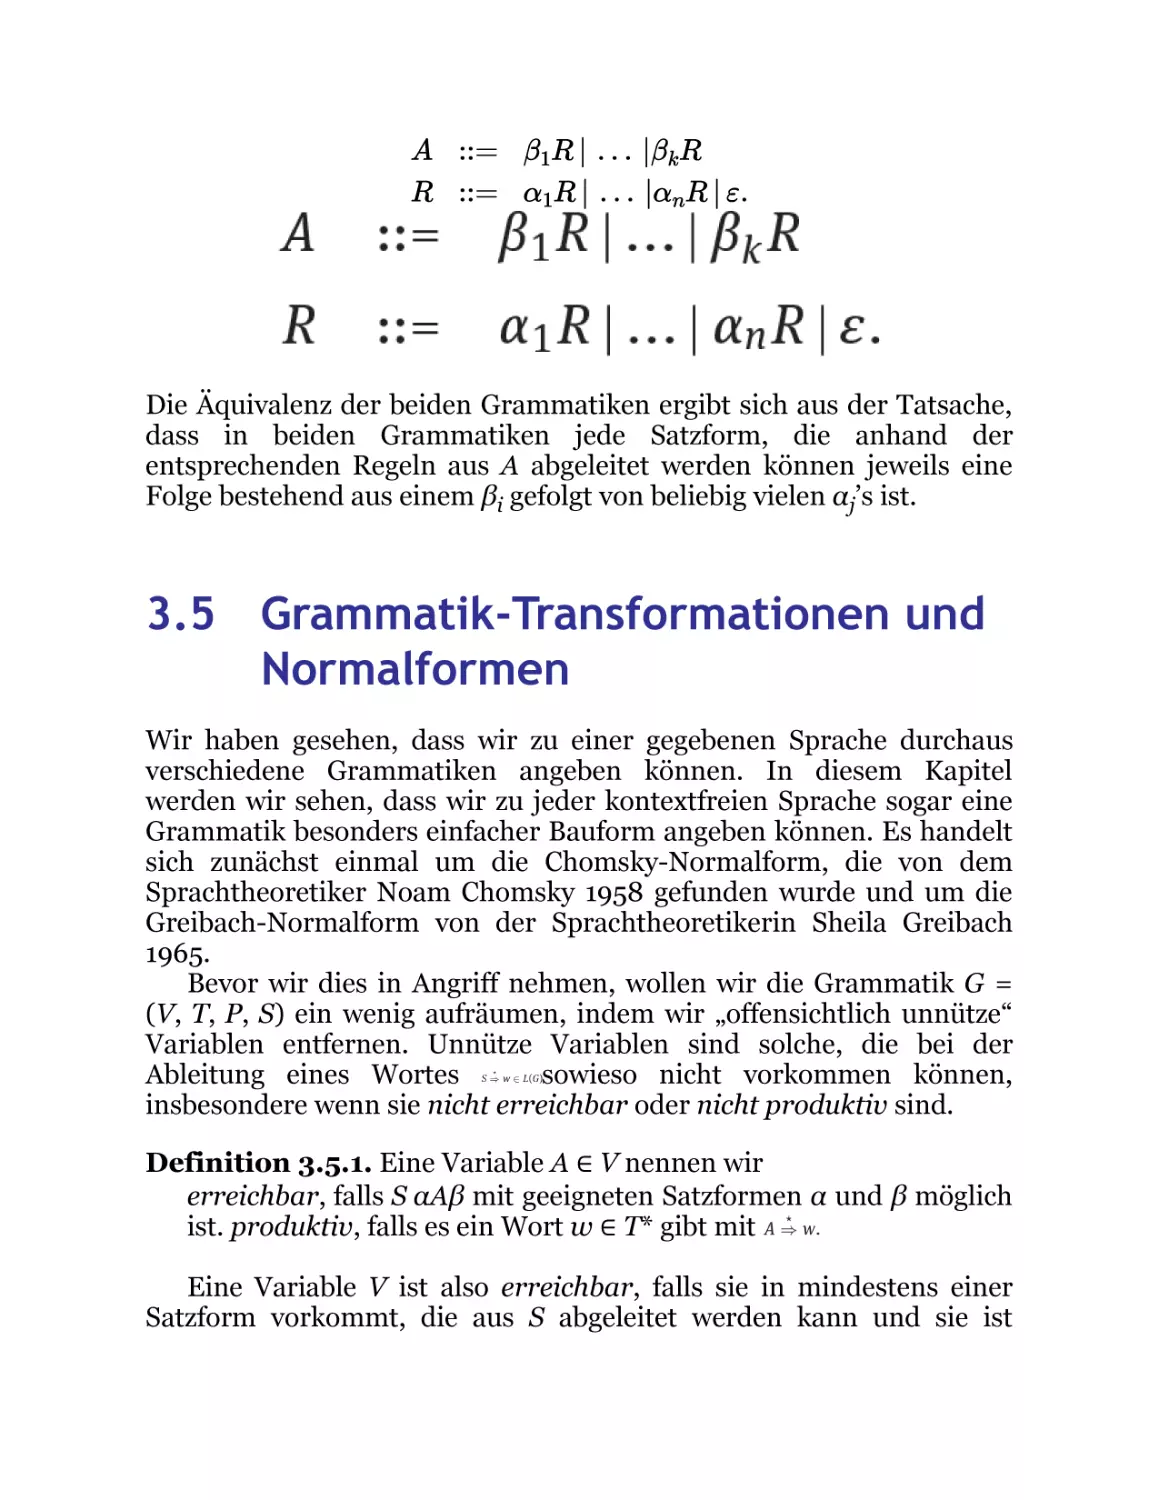 3.5 Grammatik-Transformationen und Normalformen